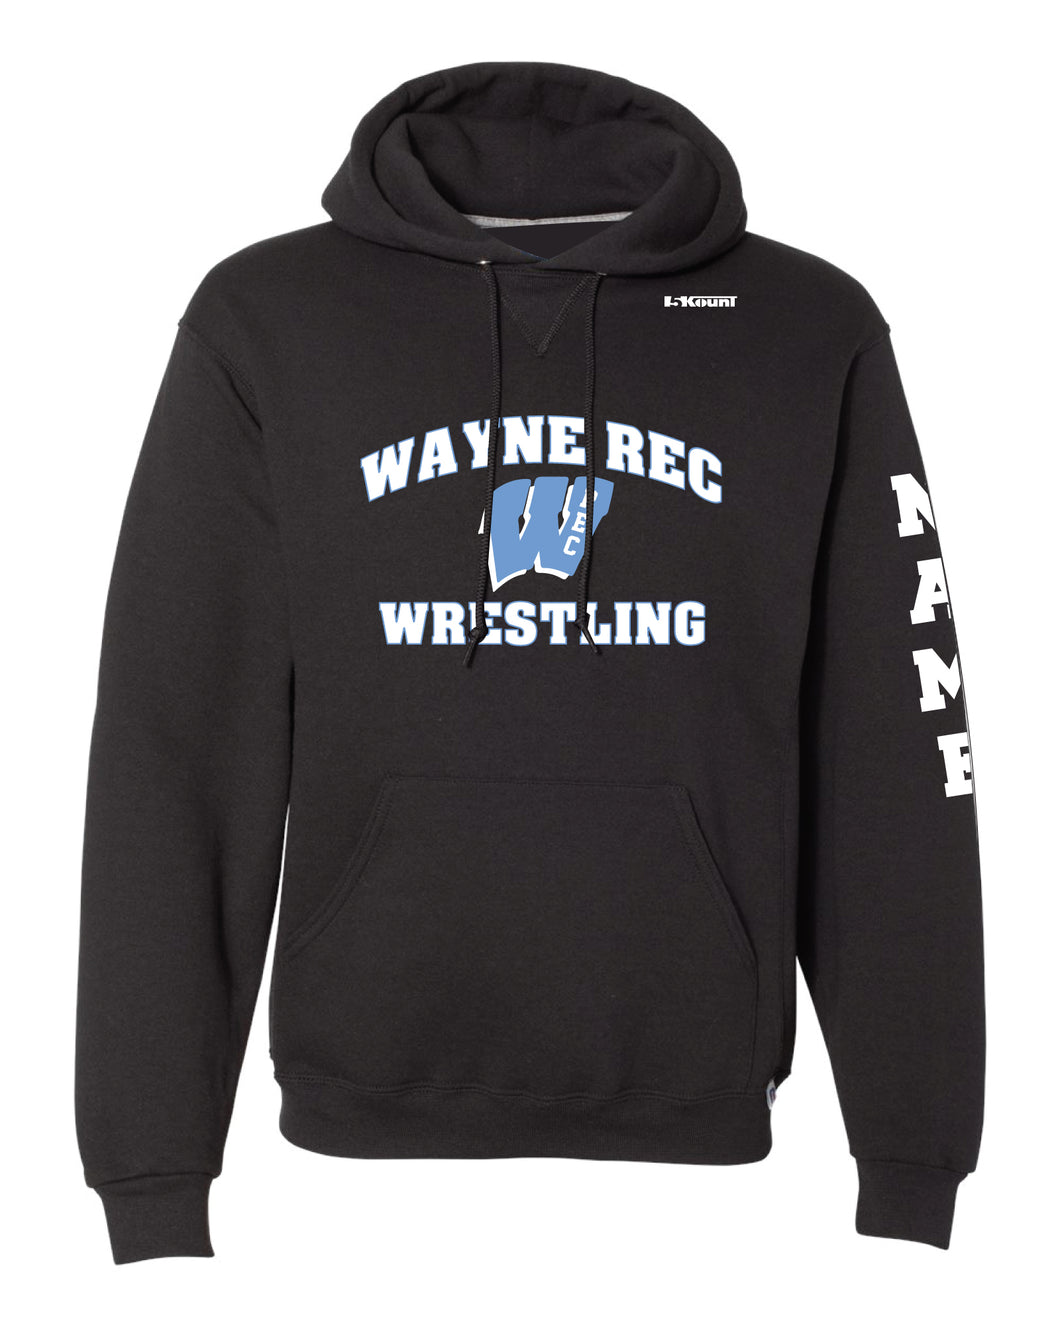 Wayne Rec Wrestling Russell Athletic Cotton Hoodie - Black - 5KounT2018